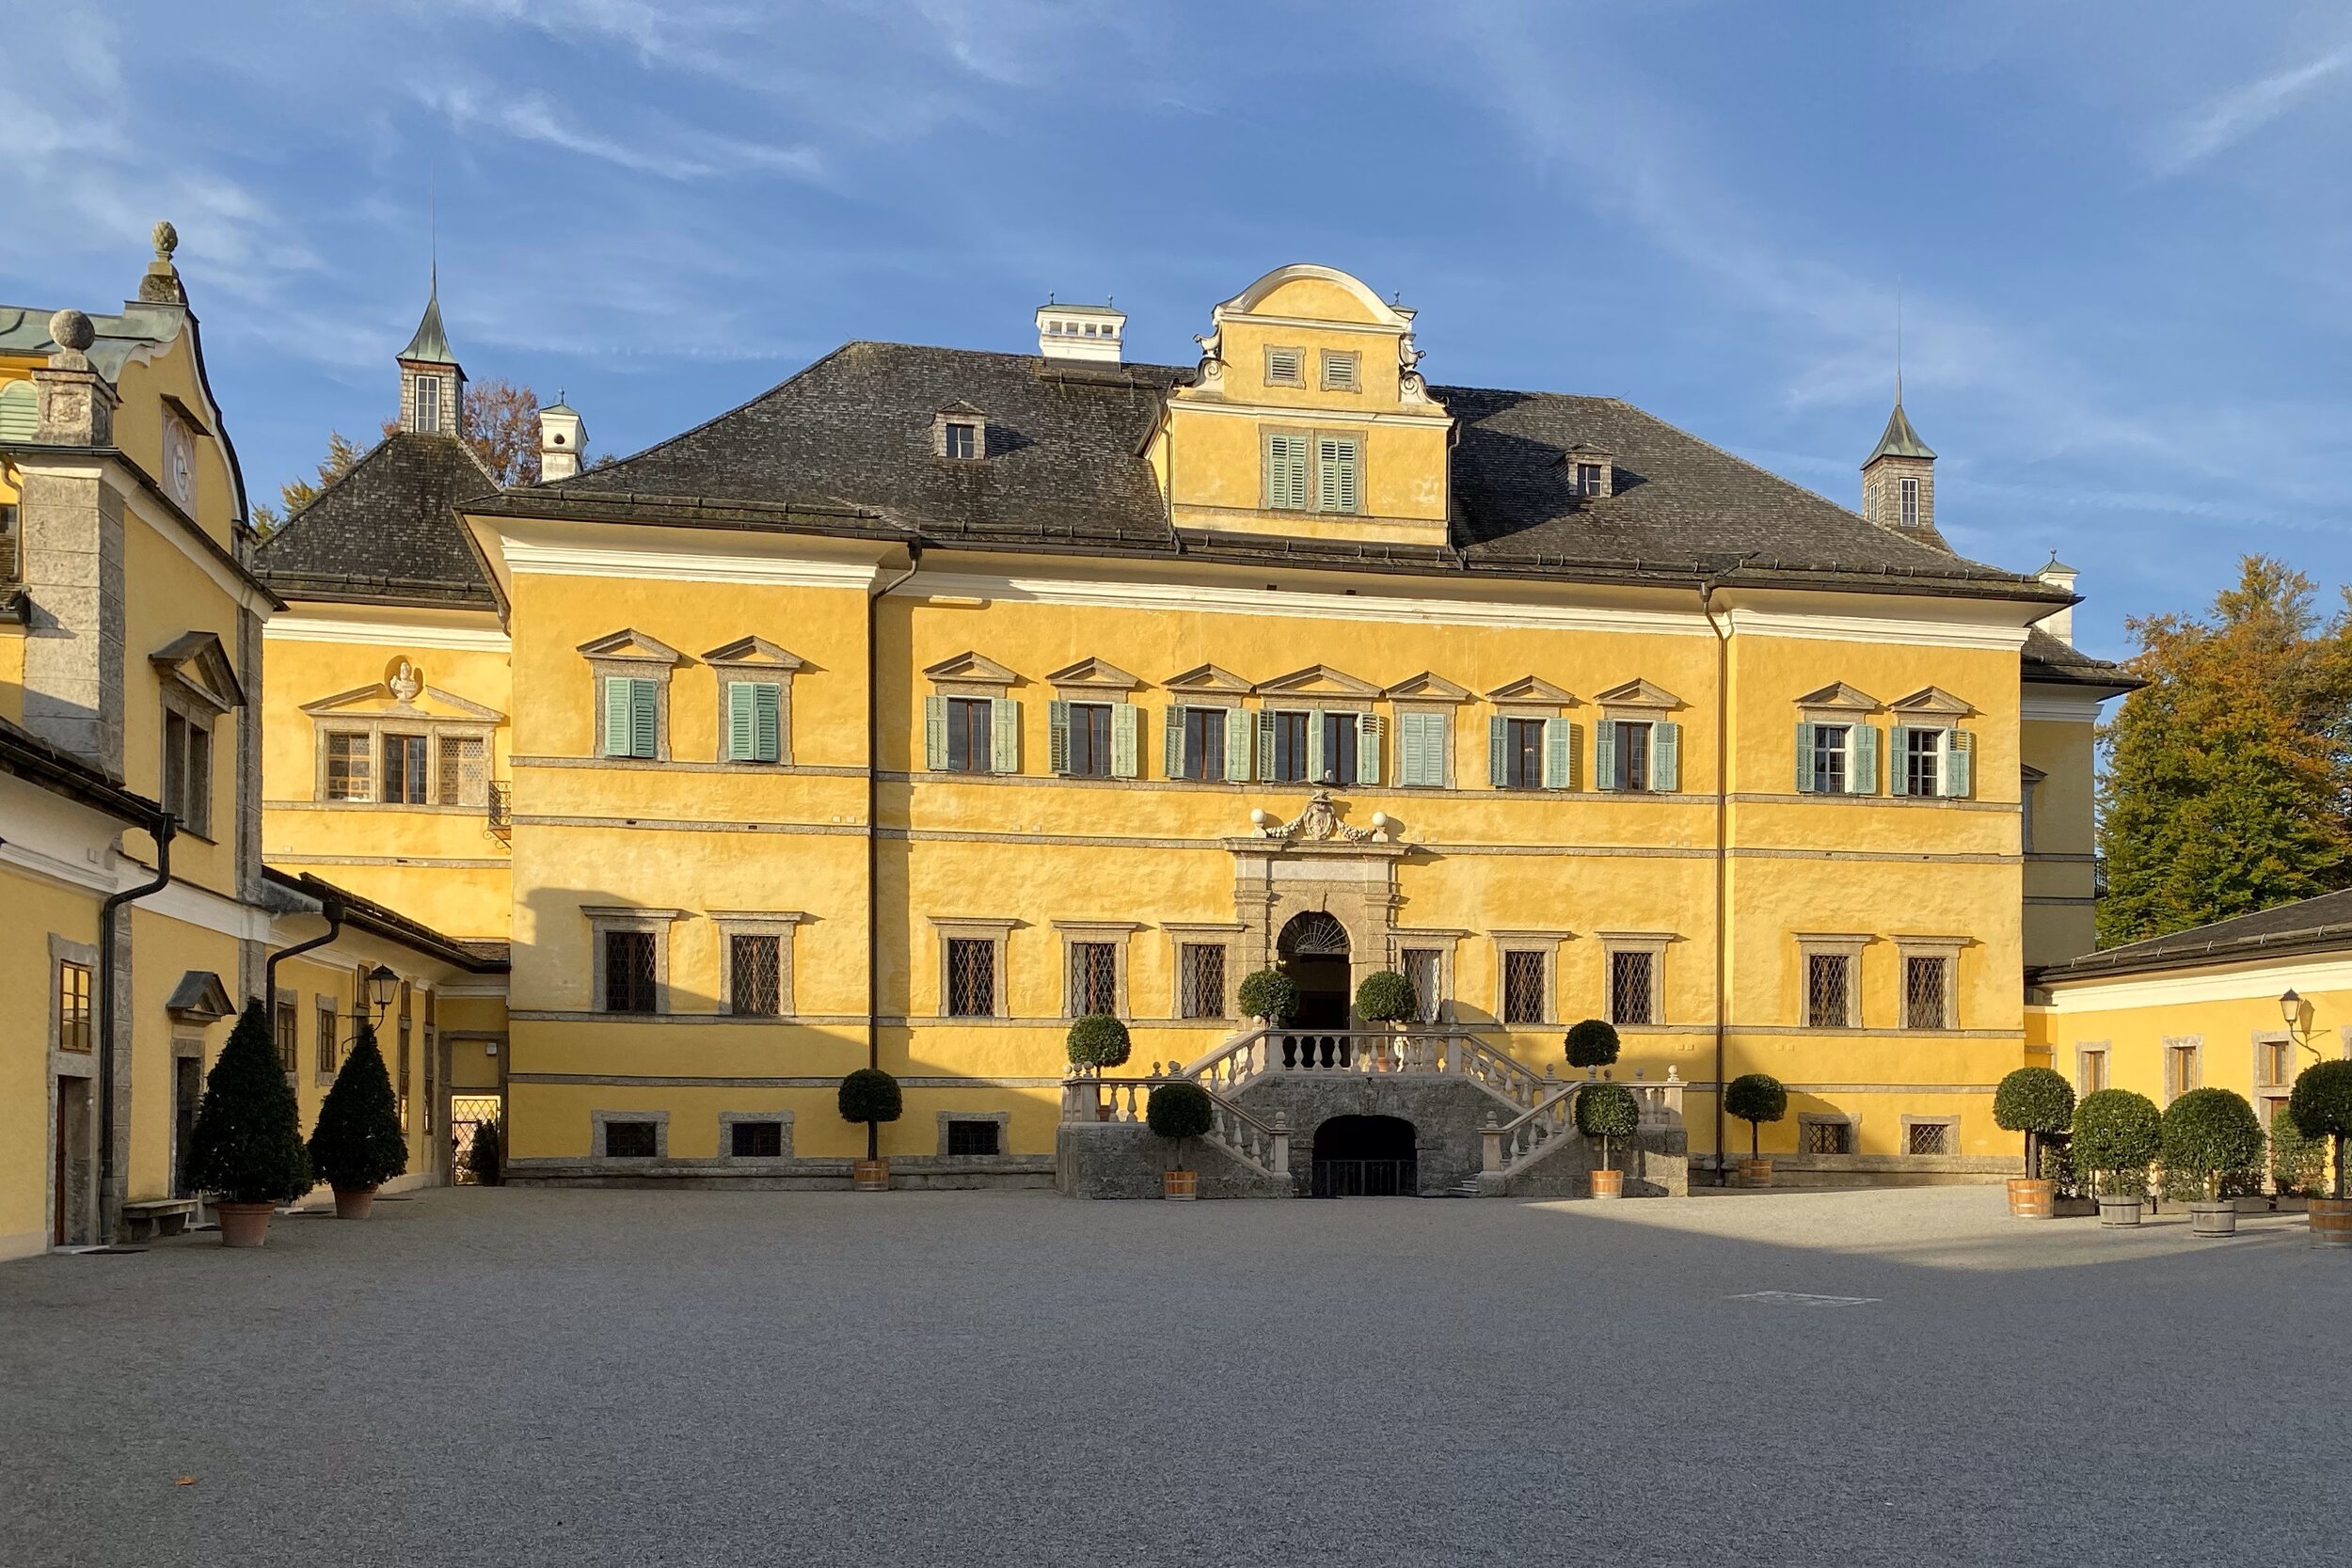  Hellbrunn Palace 